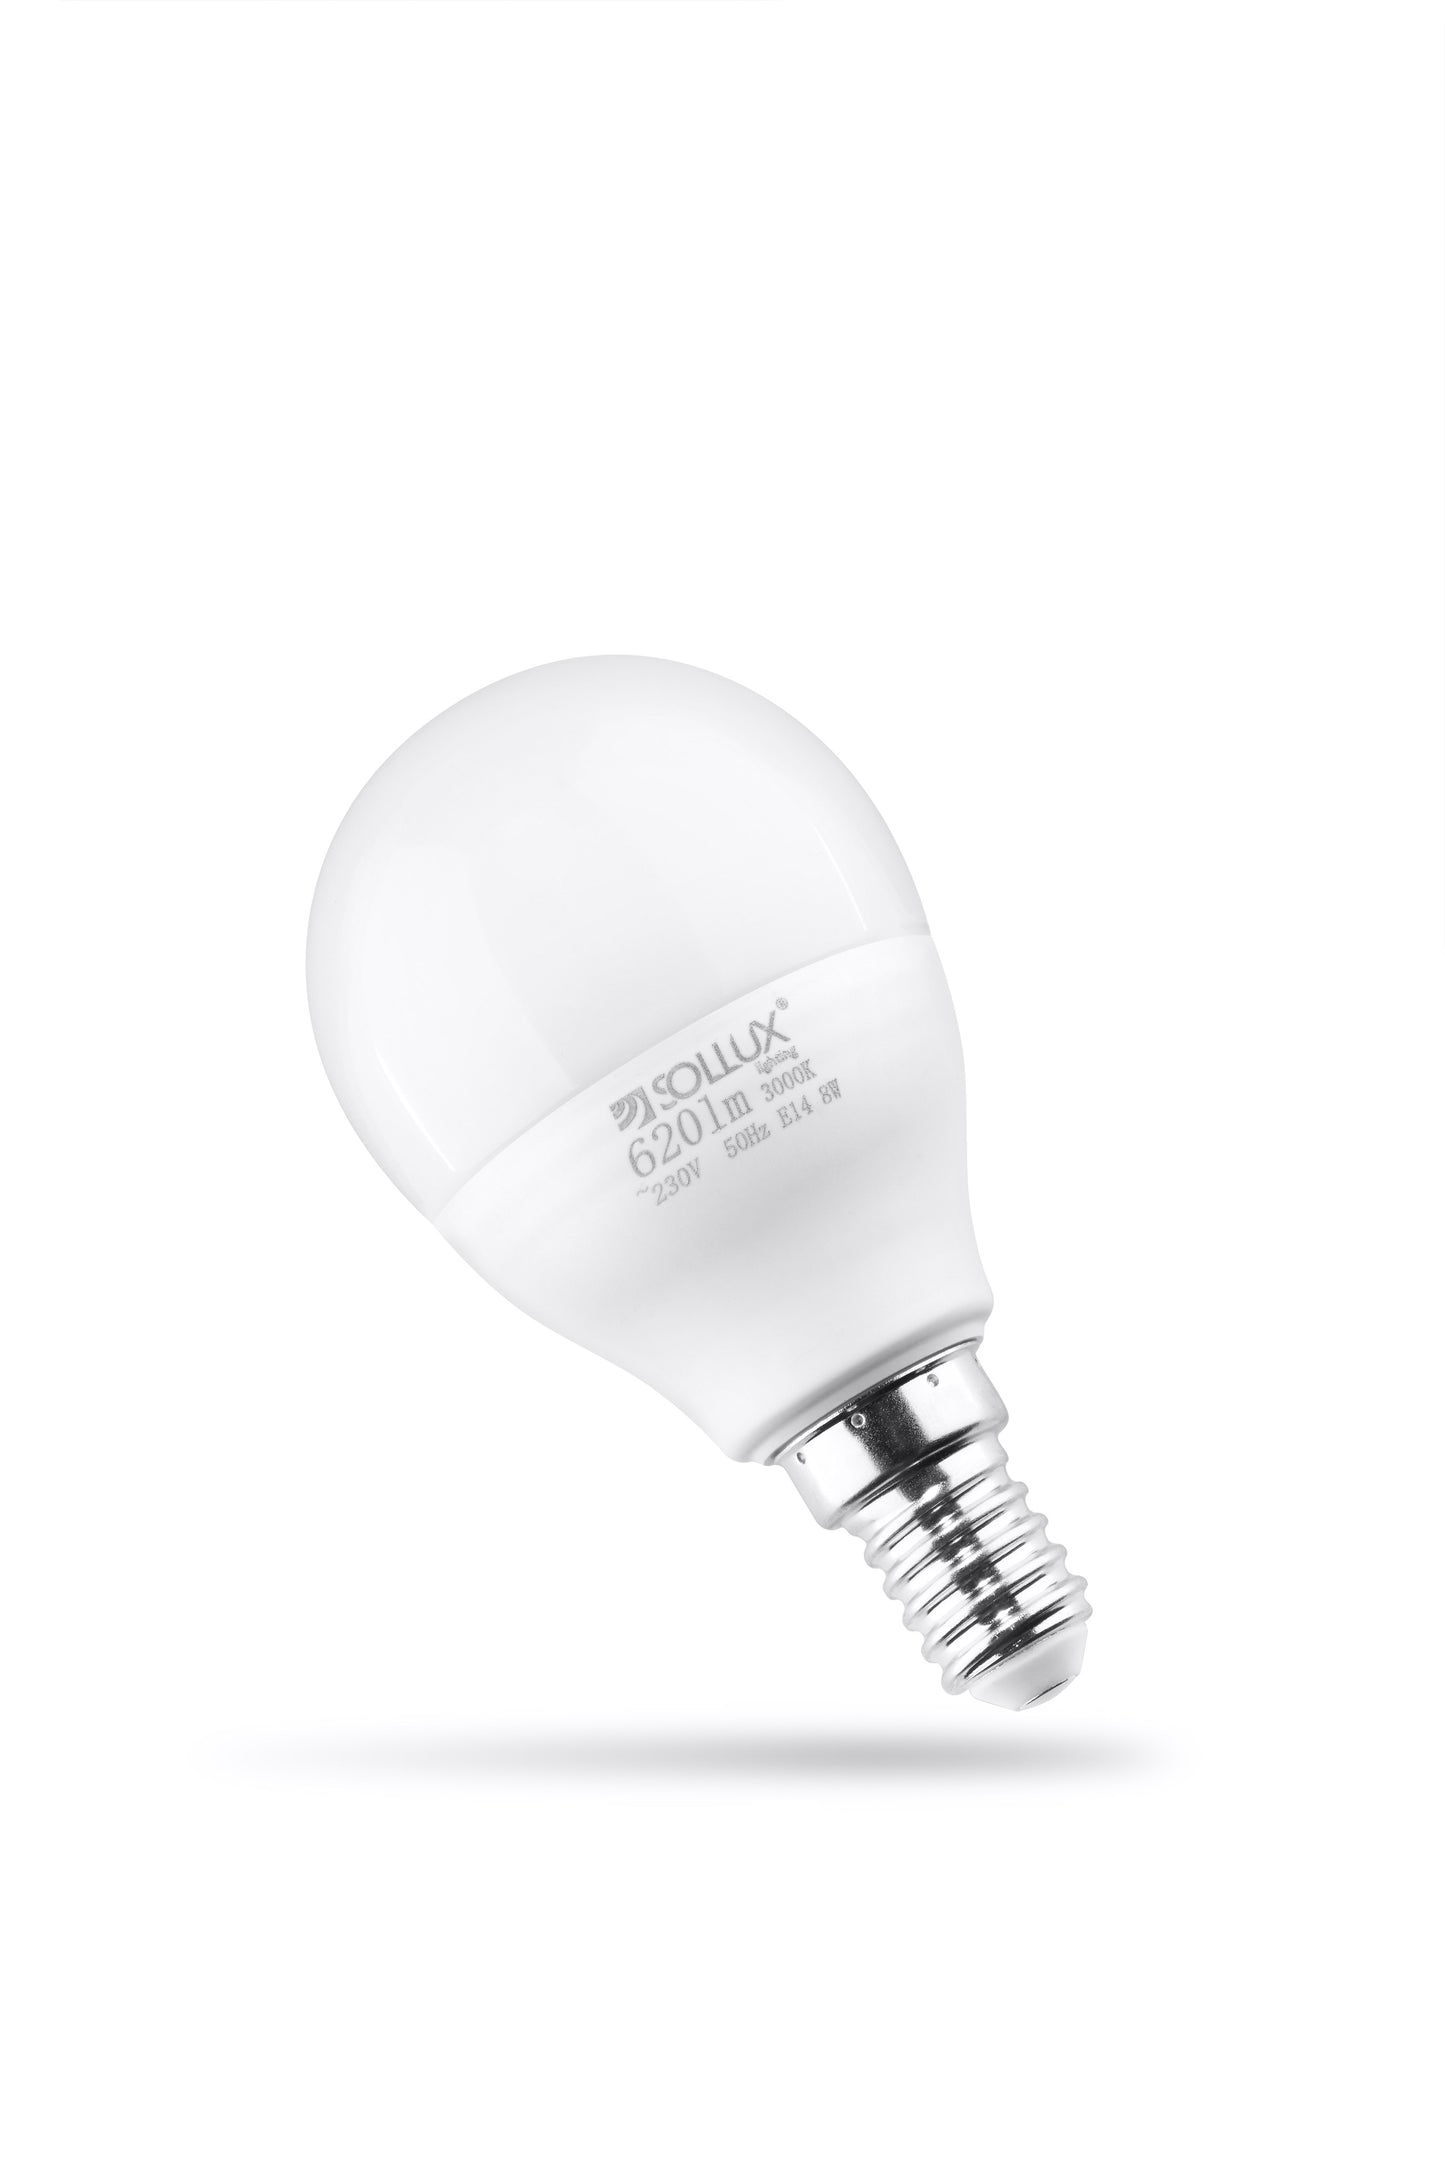 LED bulb E14 3000K 8W 620lm